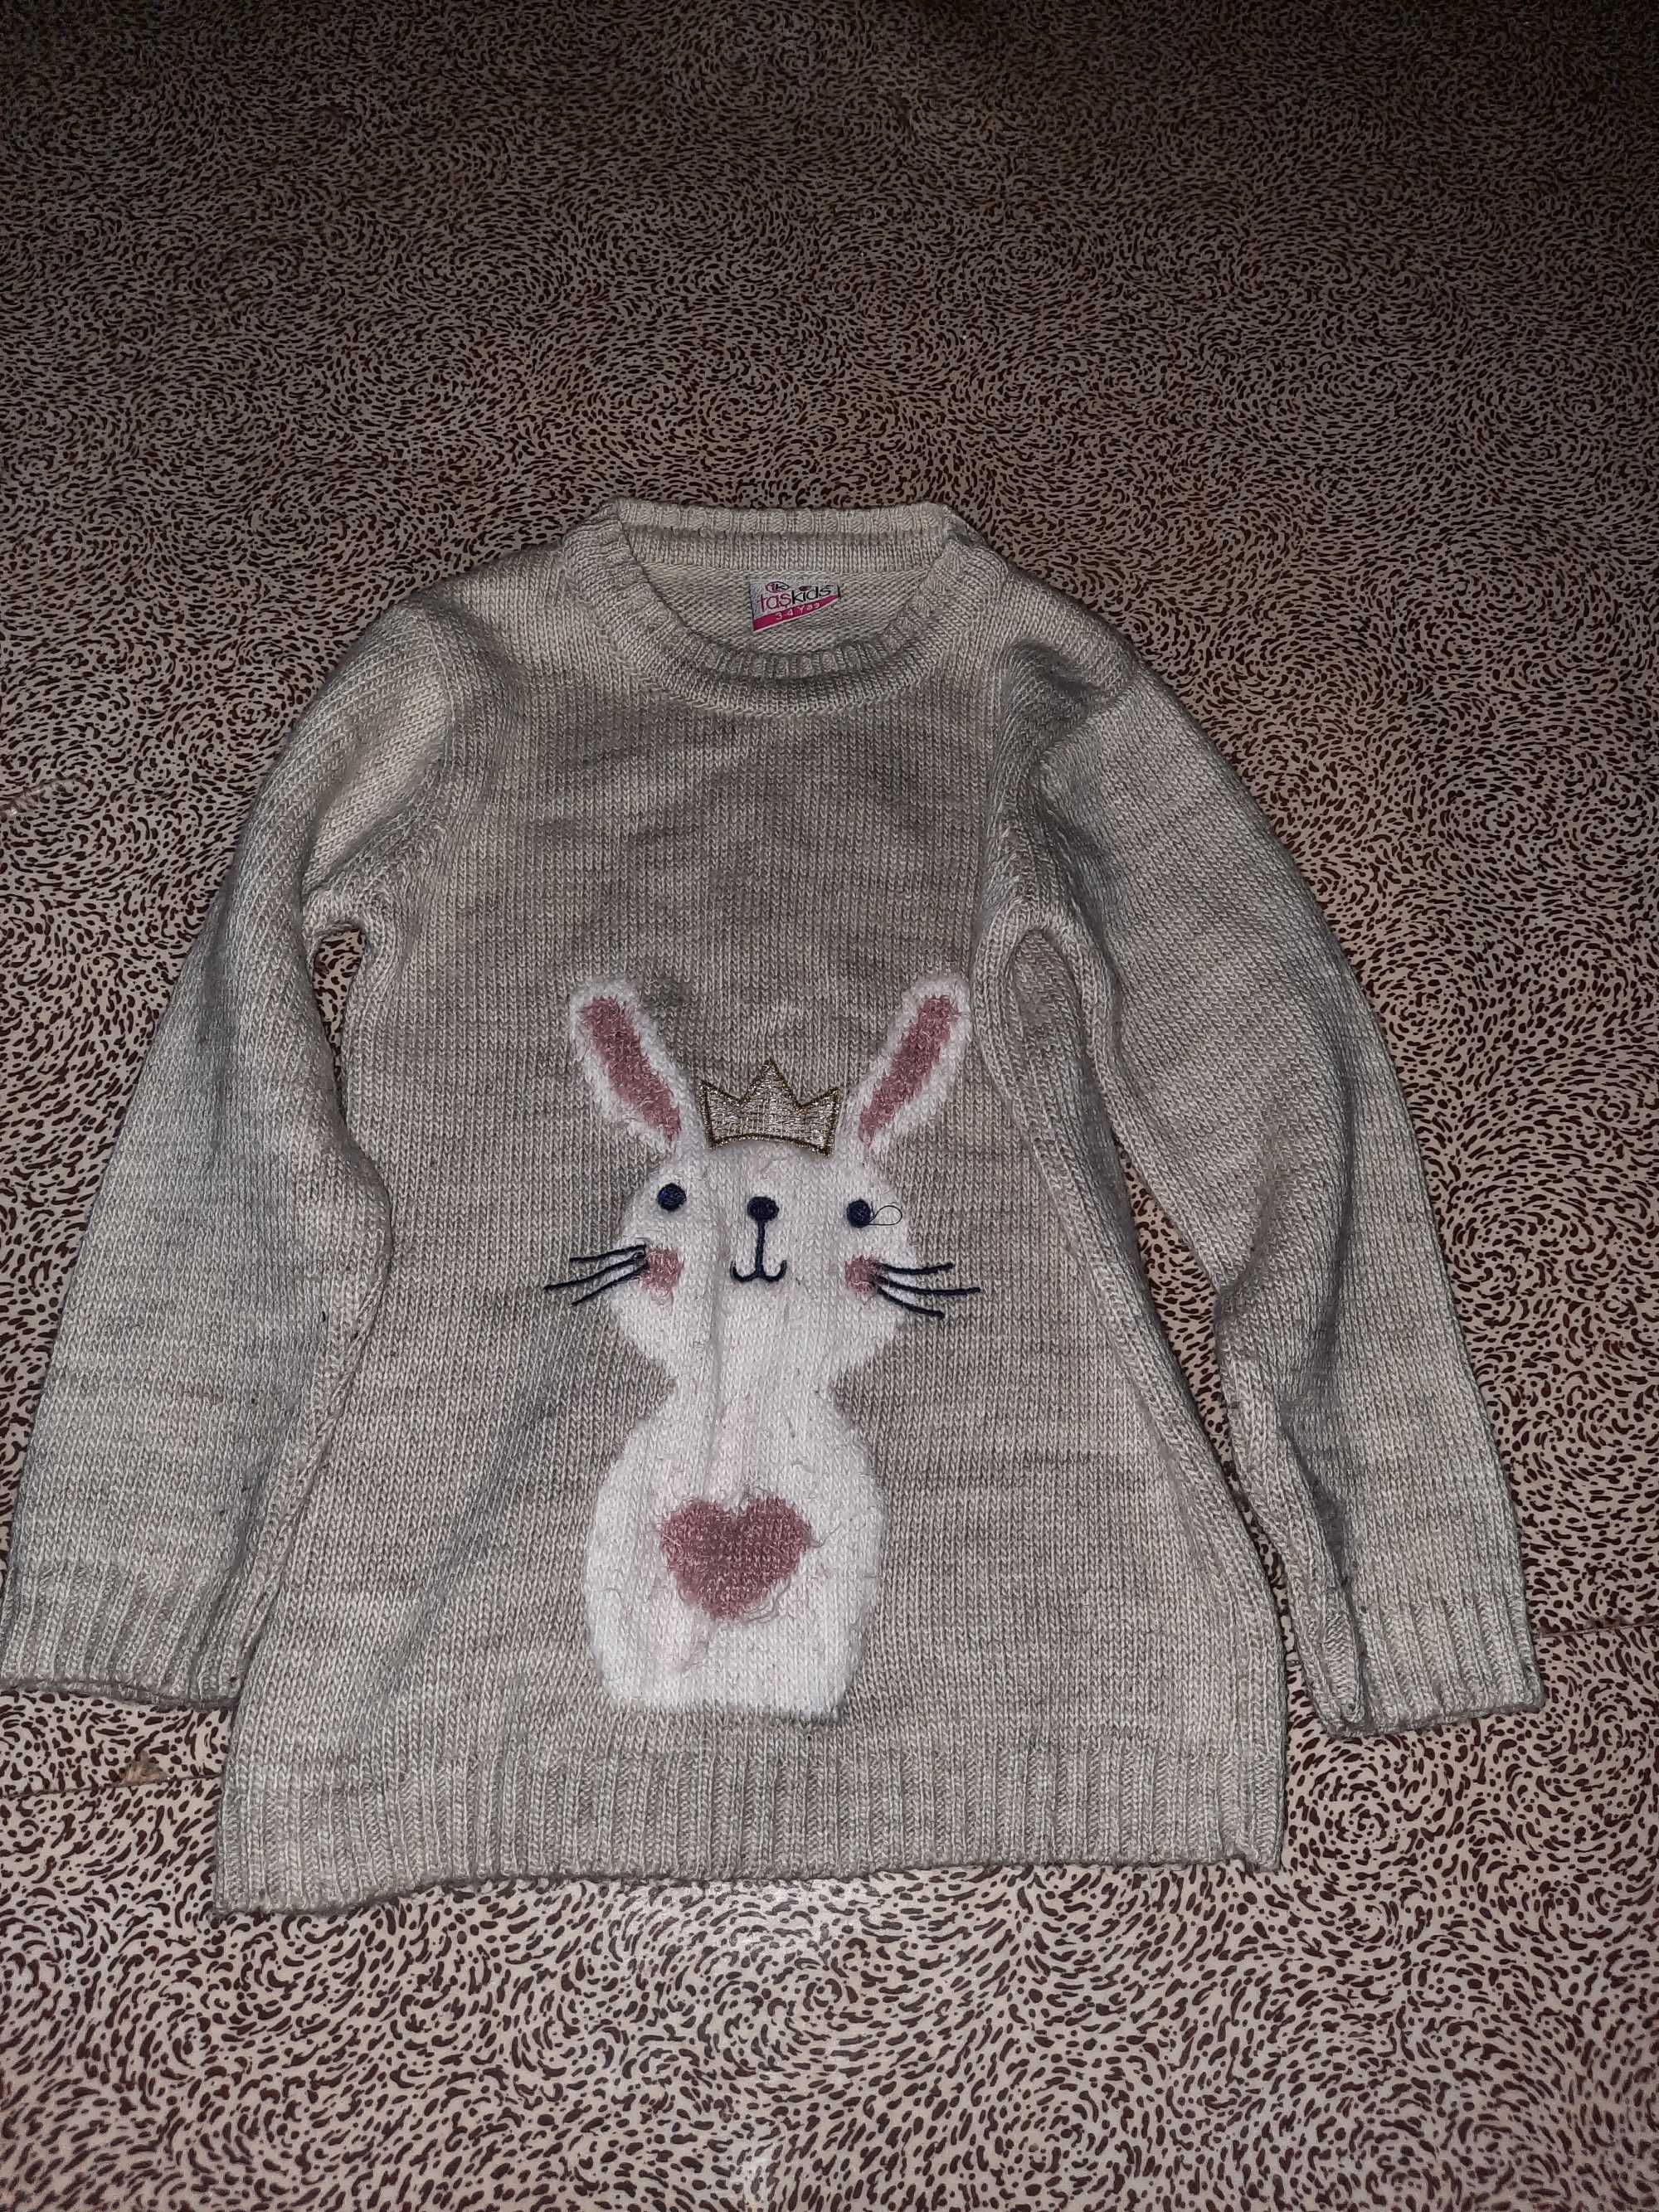 Продам свитерок для девочки 4-5 лет